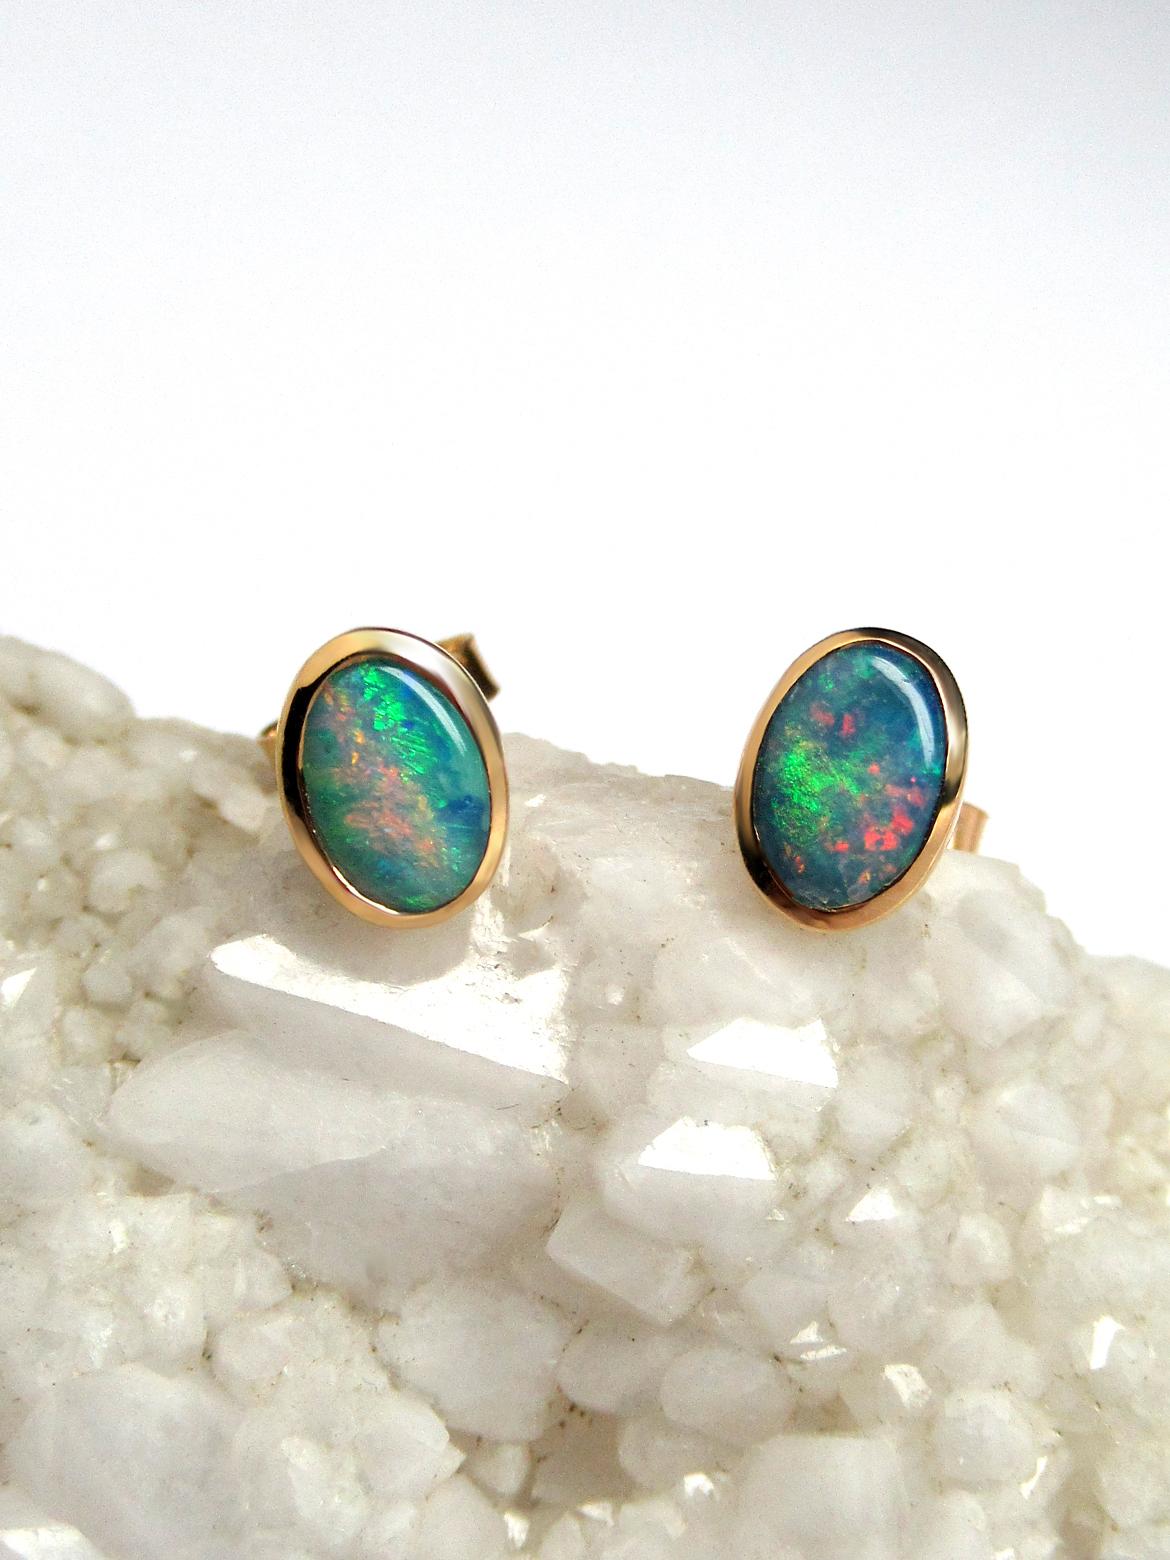 Opal Studs 18K Gold Earrings Natural Australian Opal 4